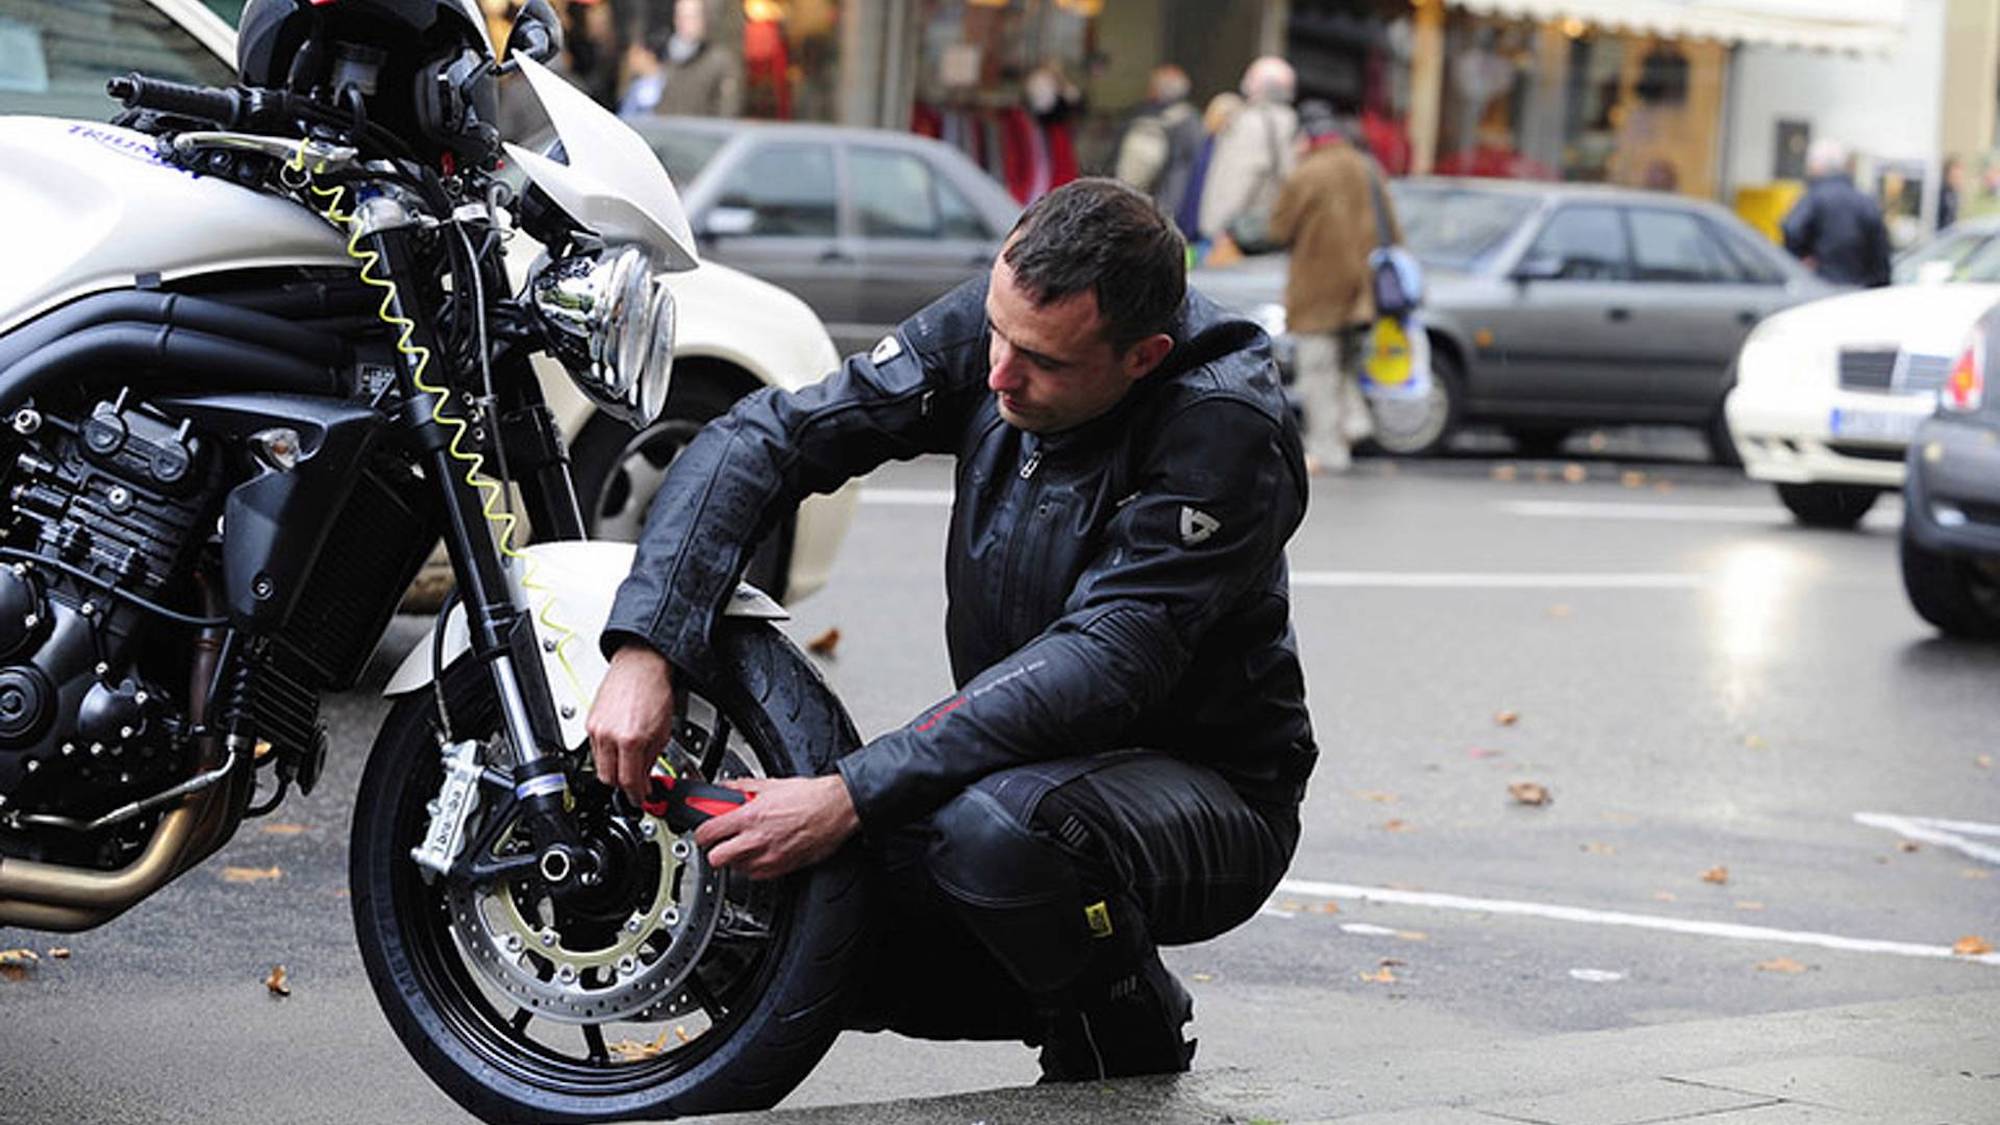 一名男子正在演示如何盗窃摩托车。媒体来源:RideApart